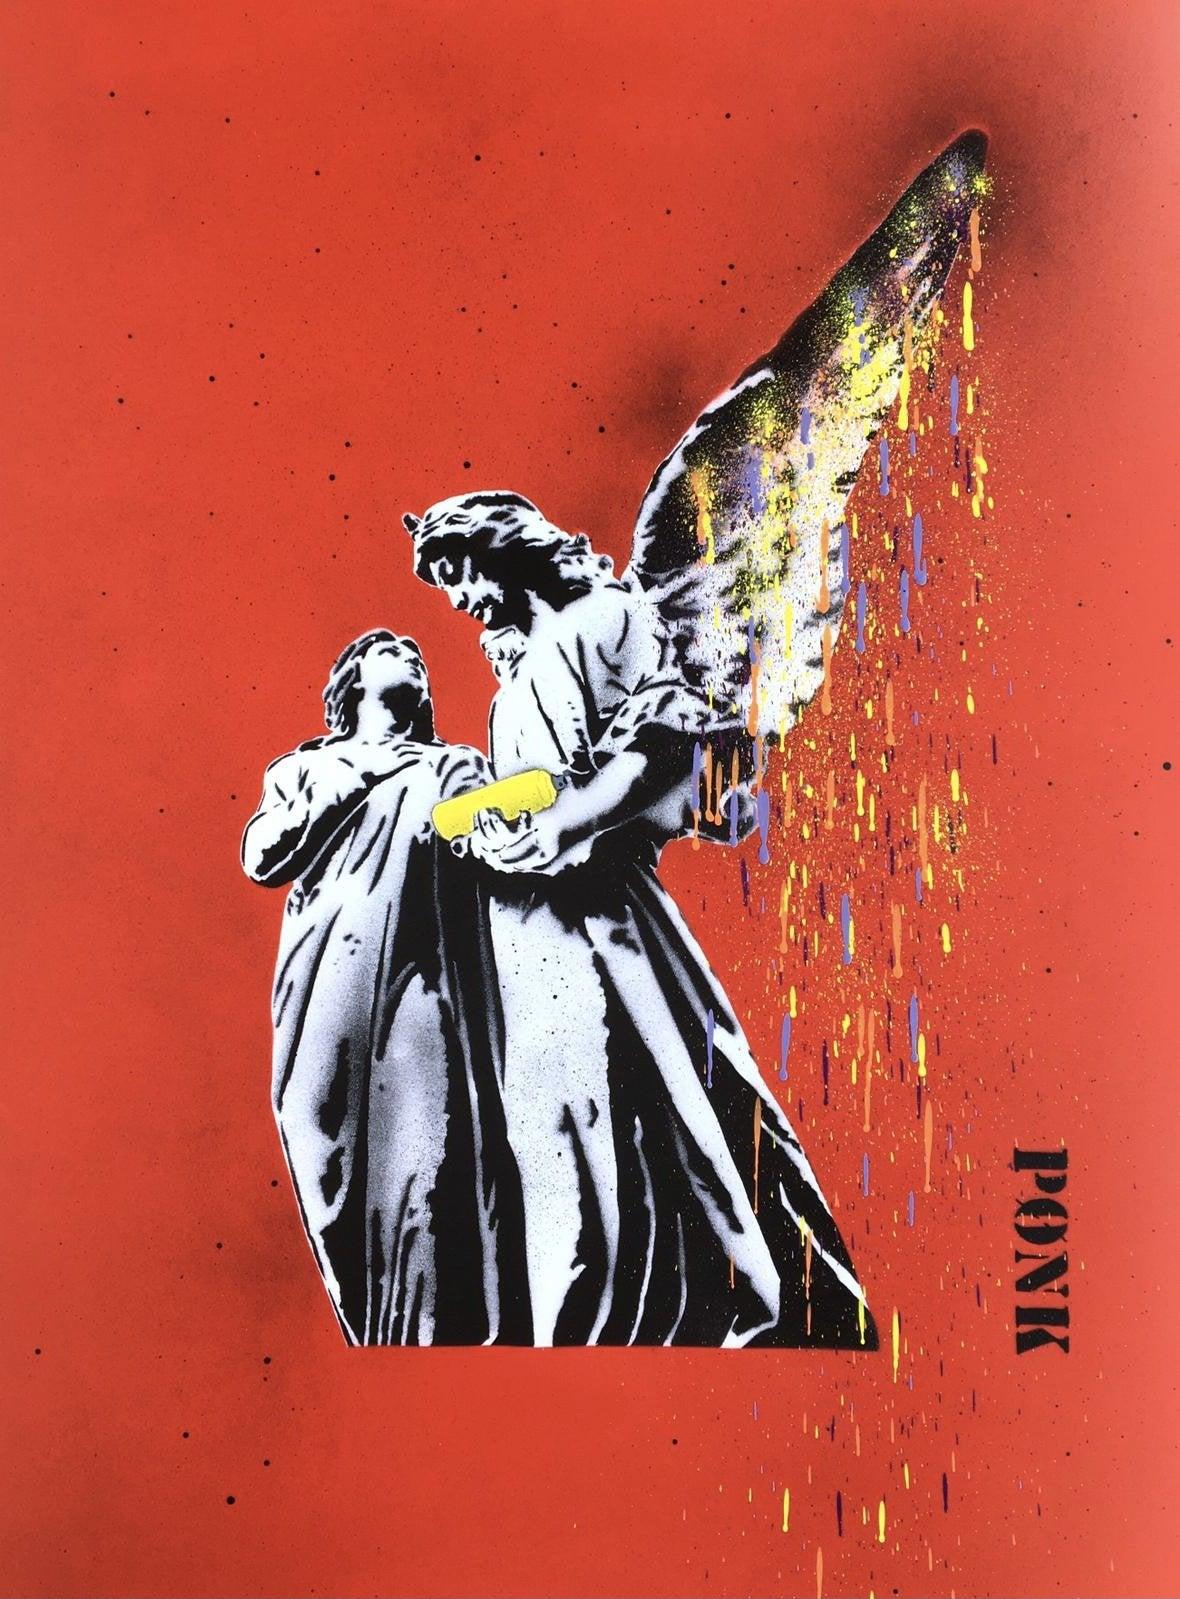 Spray for Love – 1/1 (Rot) von PONK (Street Art), 2021